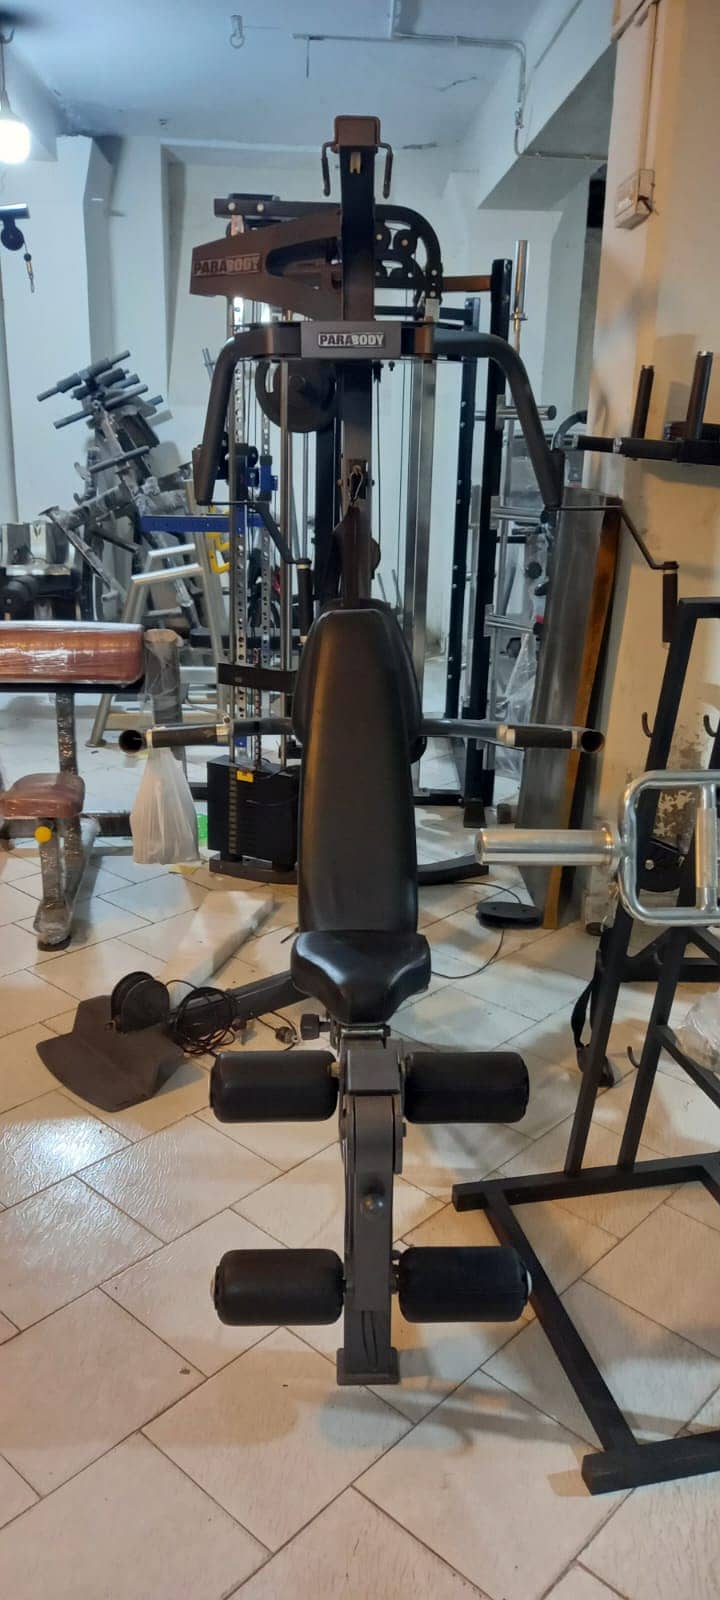 ALL gym setup  Elliptical spin bike cycle treadmill dumbbal plate bike 9